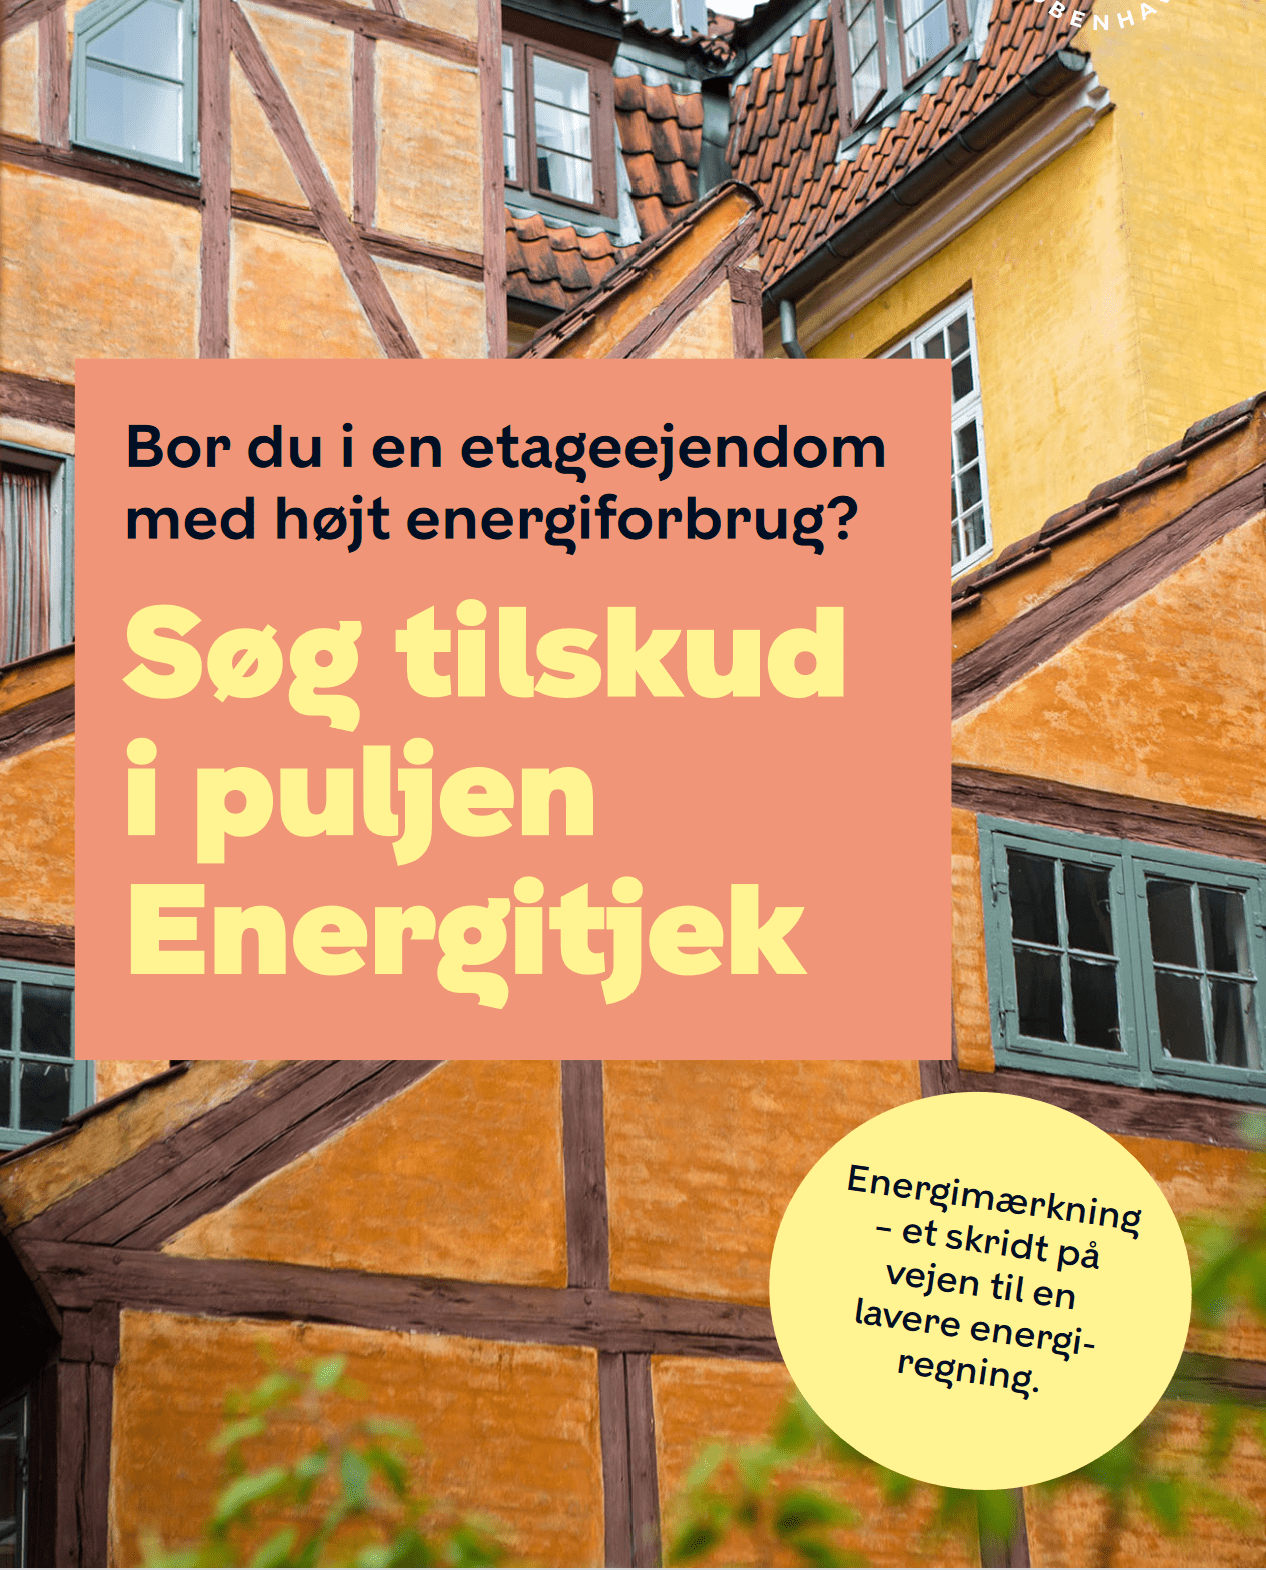 SIDSTE FRIST | Energitilskud til energimærkning af store bygninger i københavns kommune